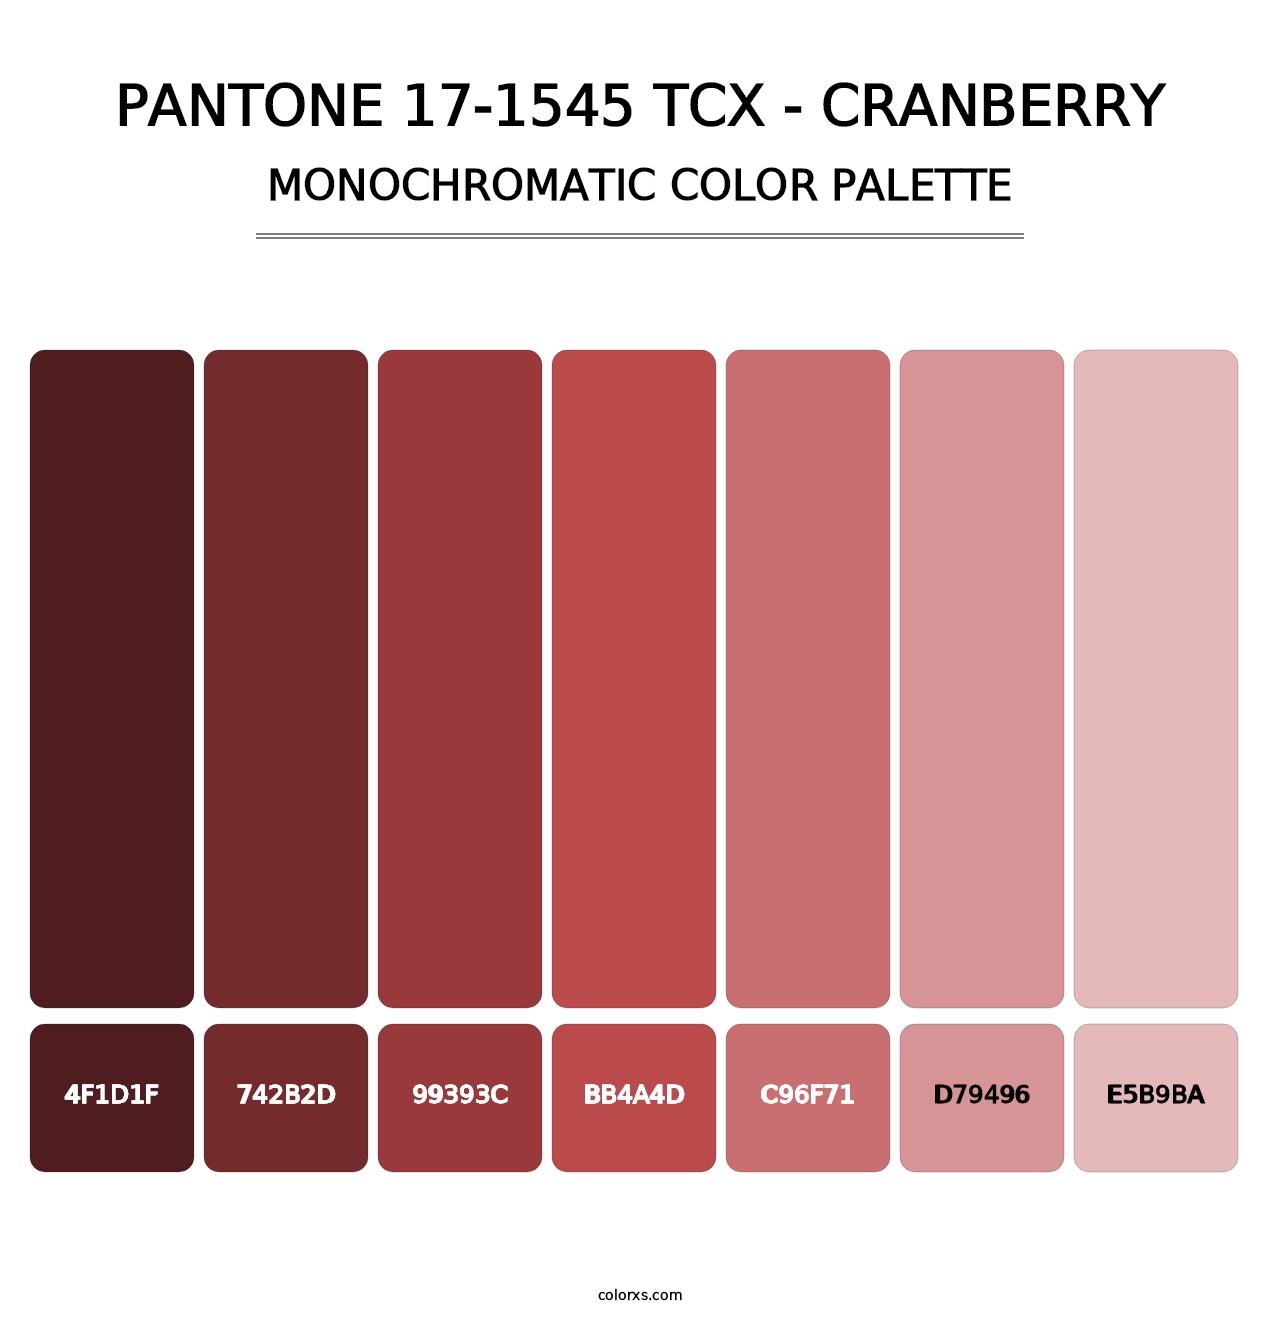 PANTONE 17-1545 TCX - Cranberry - Monochromatic Color Palette